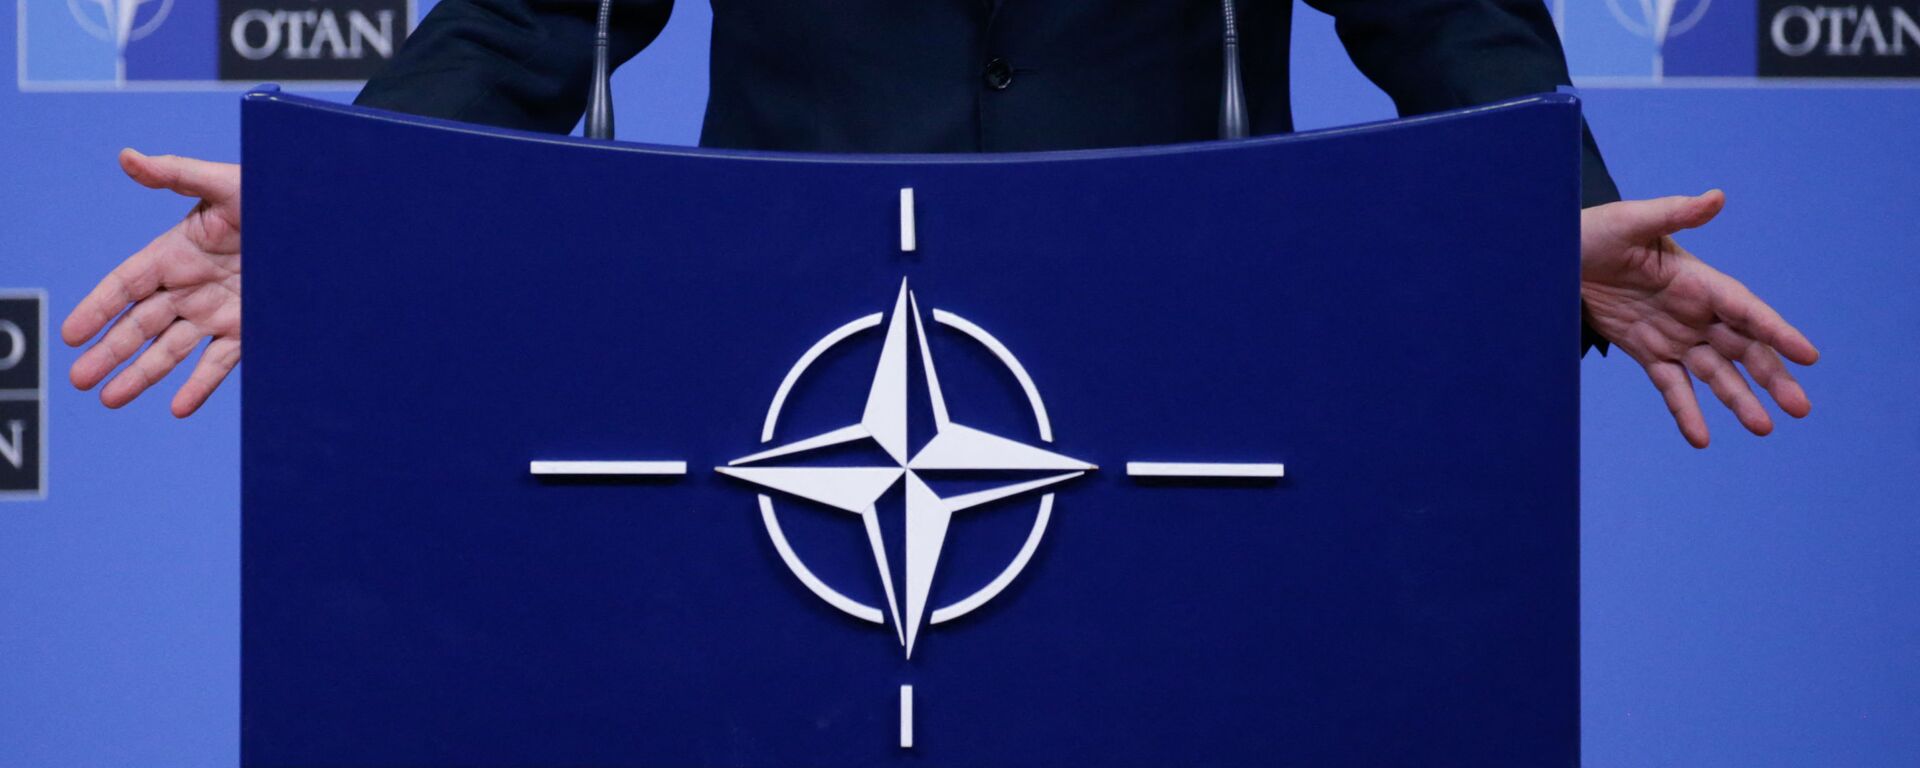 На фотографии изображен логотип НАТО, когда Генеральный секретарь НАТО Йенс Столтенберг проводит пресс-конференцию во время встречи министров обороны НАТО в Брюсселе 13 февраля 2020 г - Sputnik Аҧсны, 1920, 27.12.2021